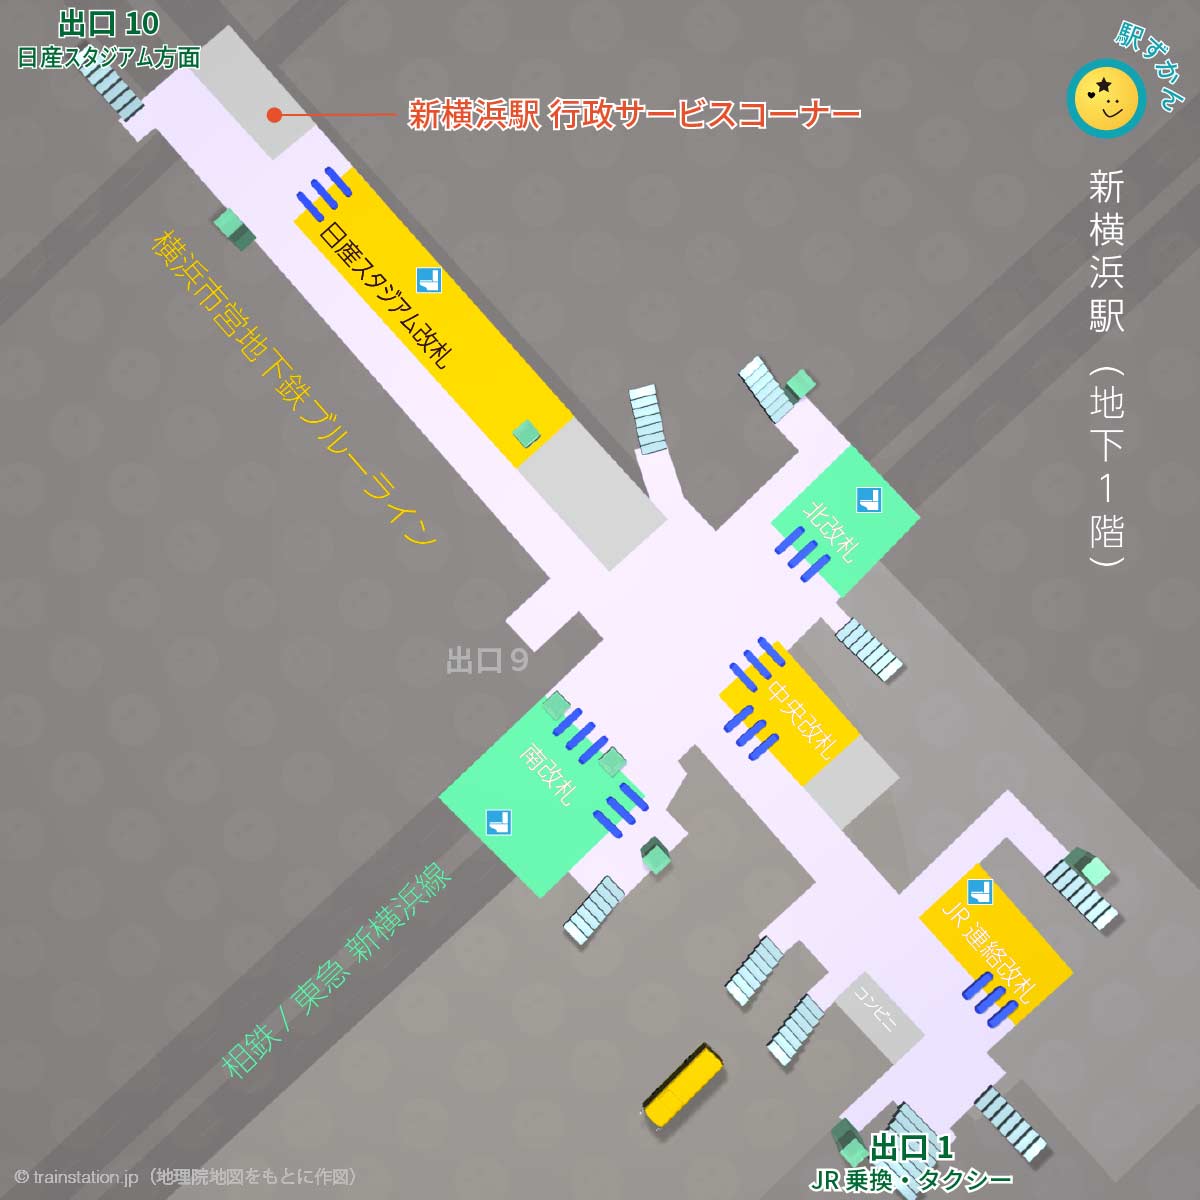 新横浜駅行政サービスコーナー地図